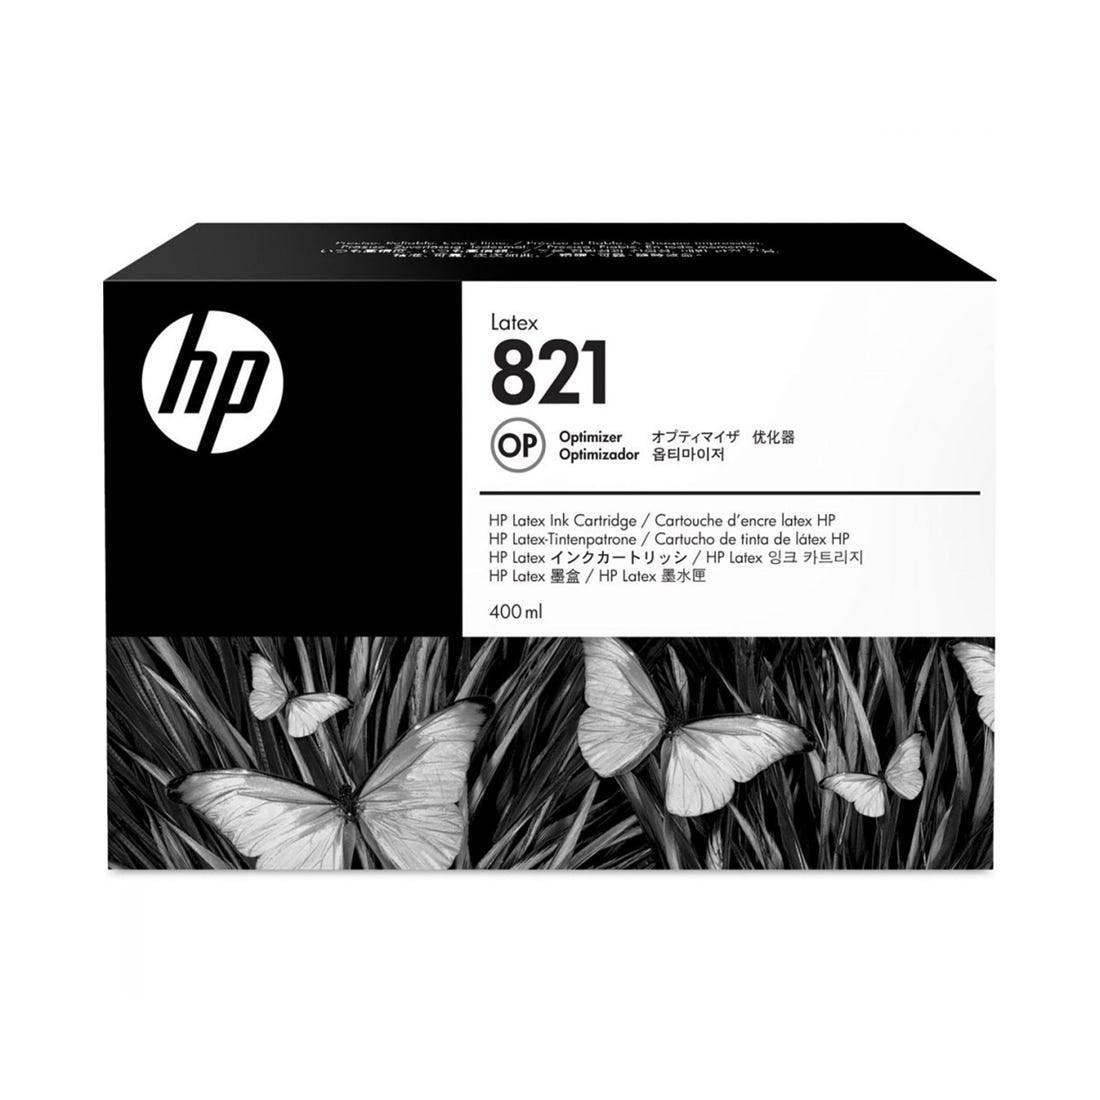 Cartucho Otimizador HP Latex 821 400 ml G0Y92A - Mega Market